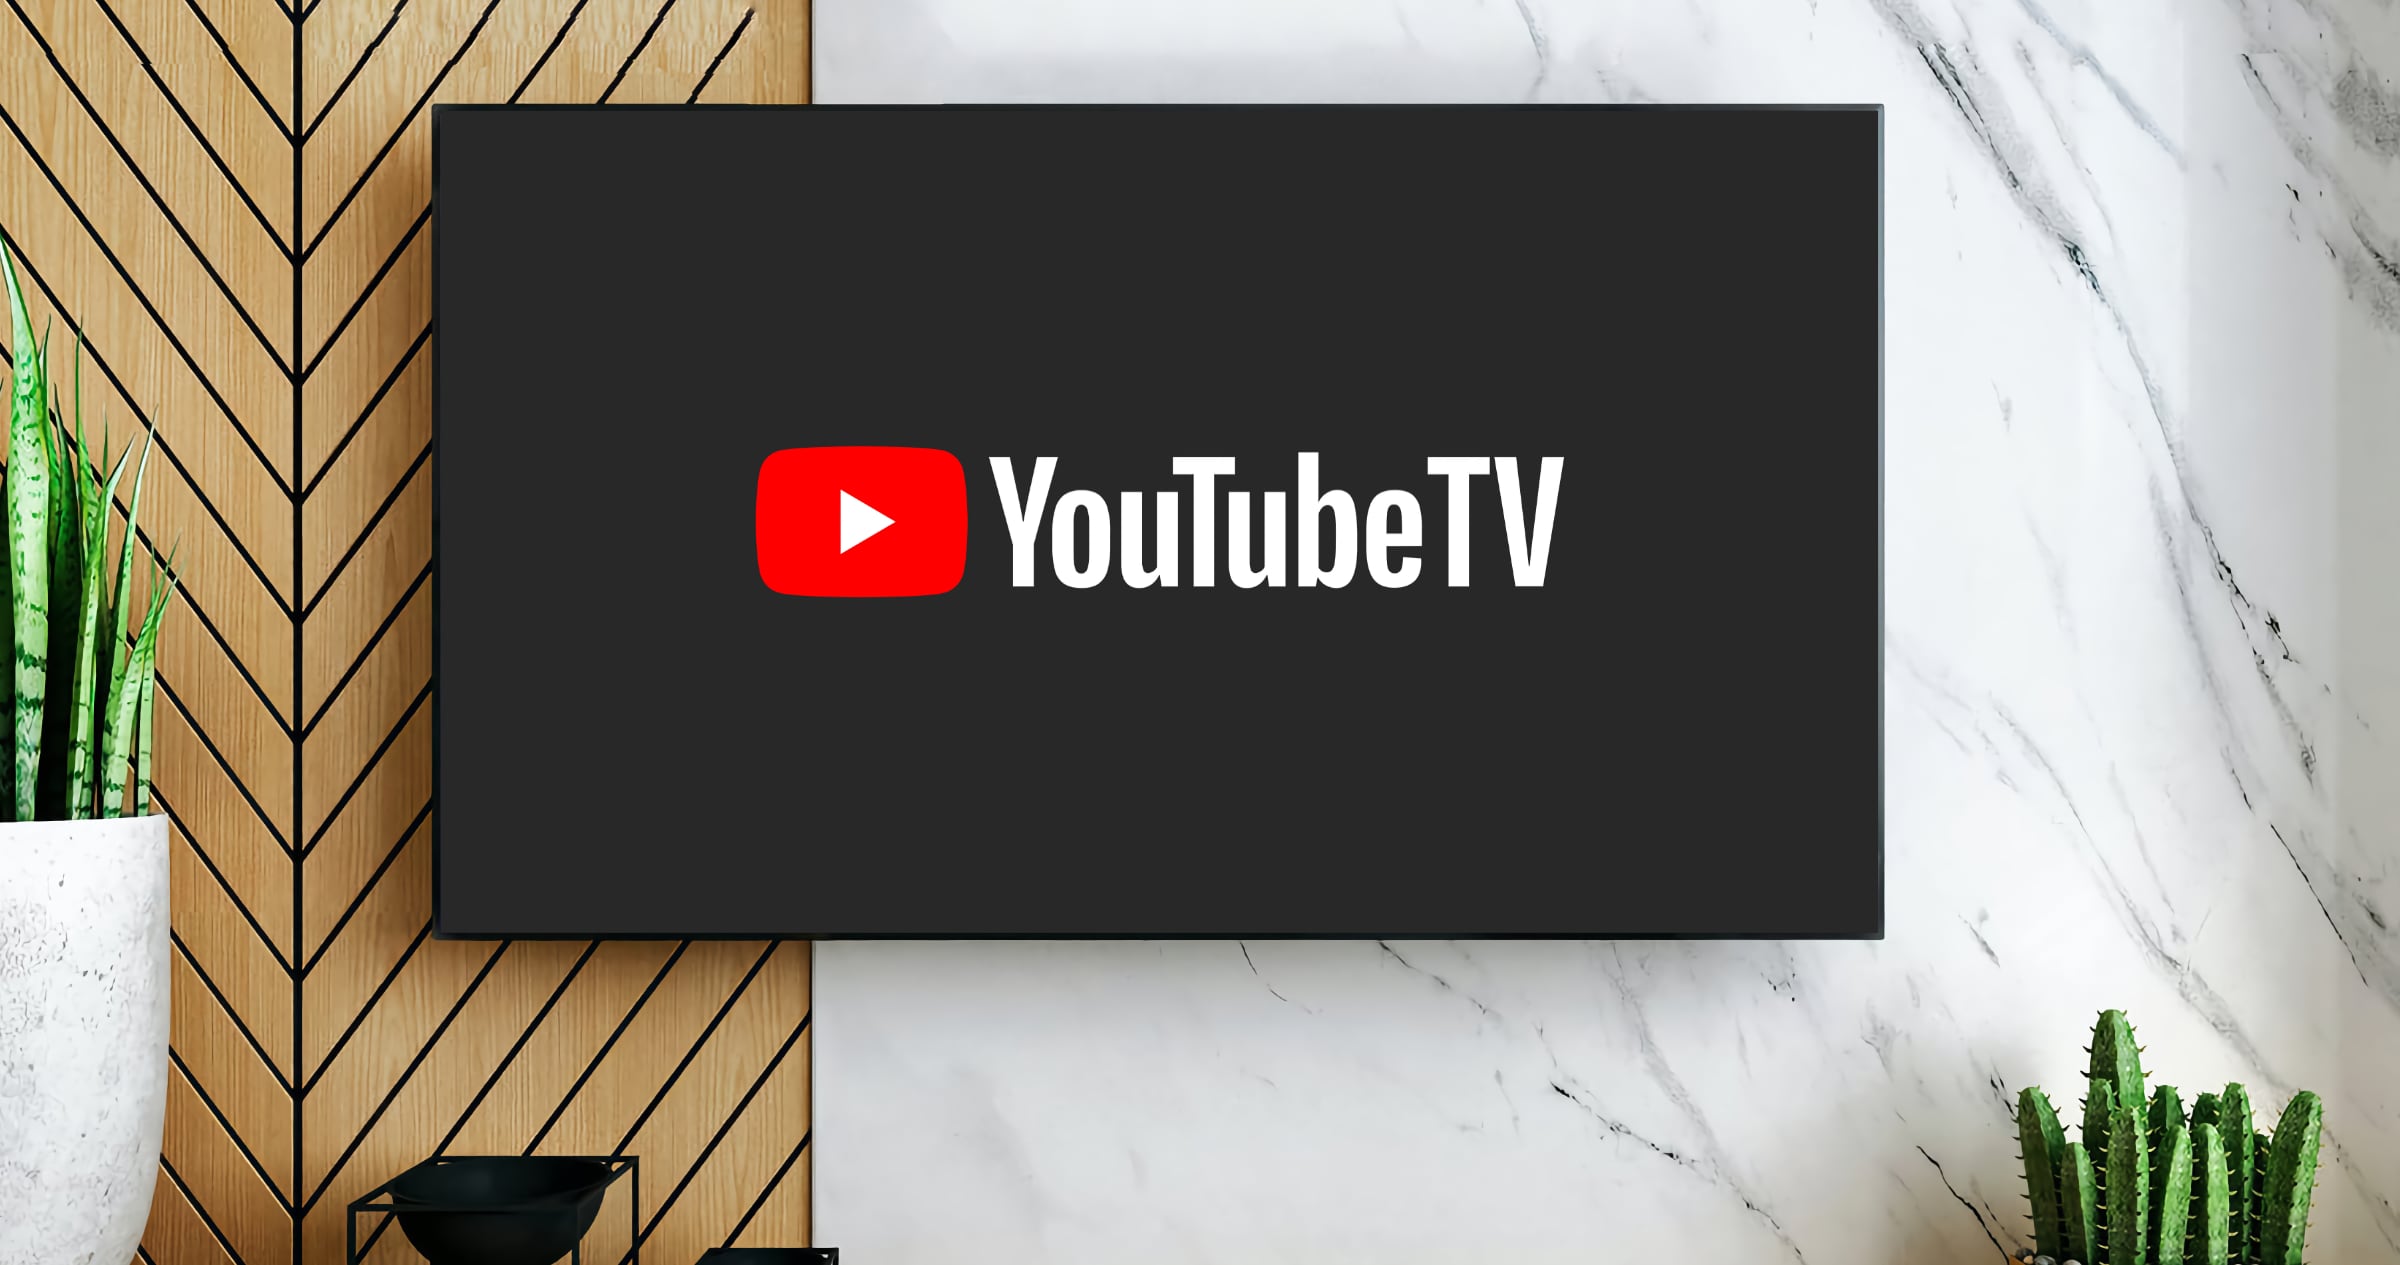 YouTube TV z obsługą dźwięku przestrzennego 5.1 na urządzeniach Google TV, Android TV i Roku OS!